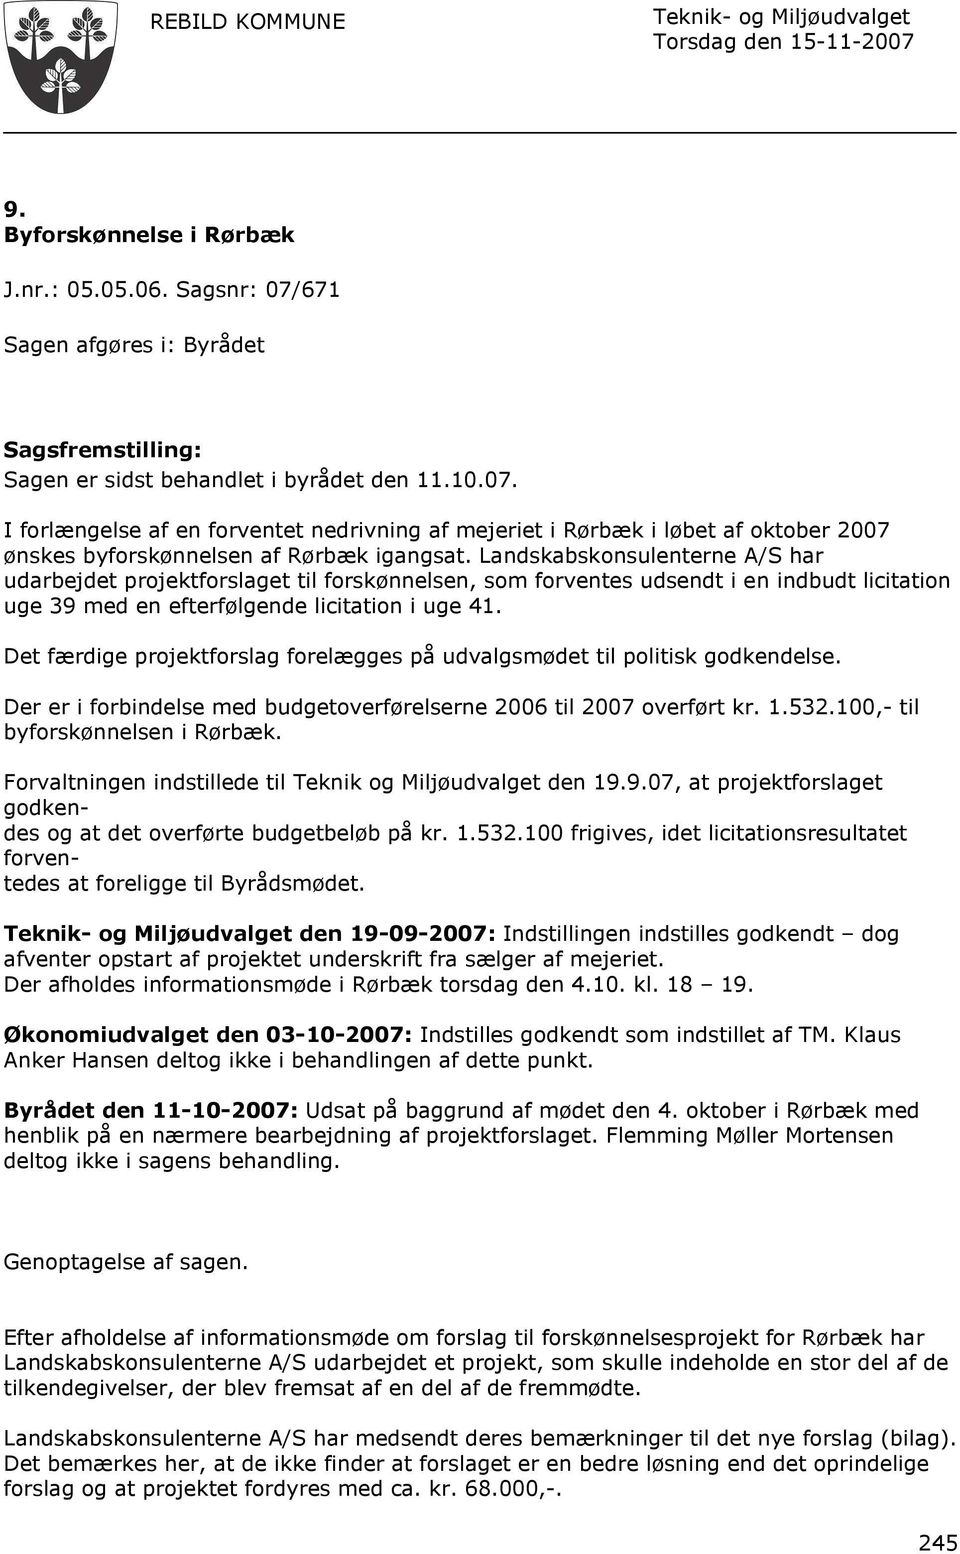 Det færdige projektforslag forelægges på udvalgsmødet til politisk godkendelse. Der er i forbindelse med budgetoverførelserne 2006 til 2007 overført kr. 1.532.100,- til byforskønnelsen i Rørbæk.